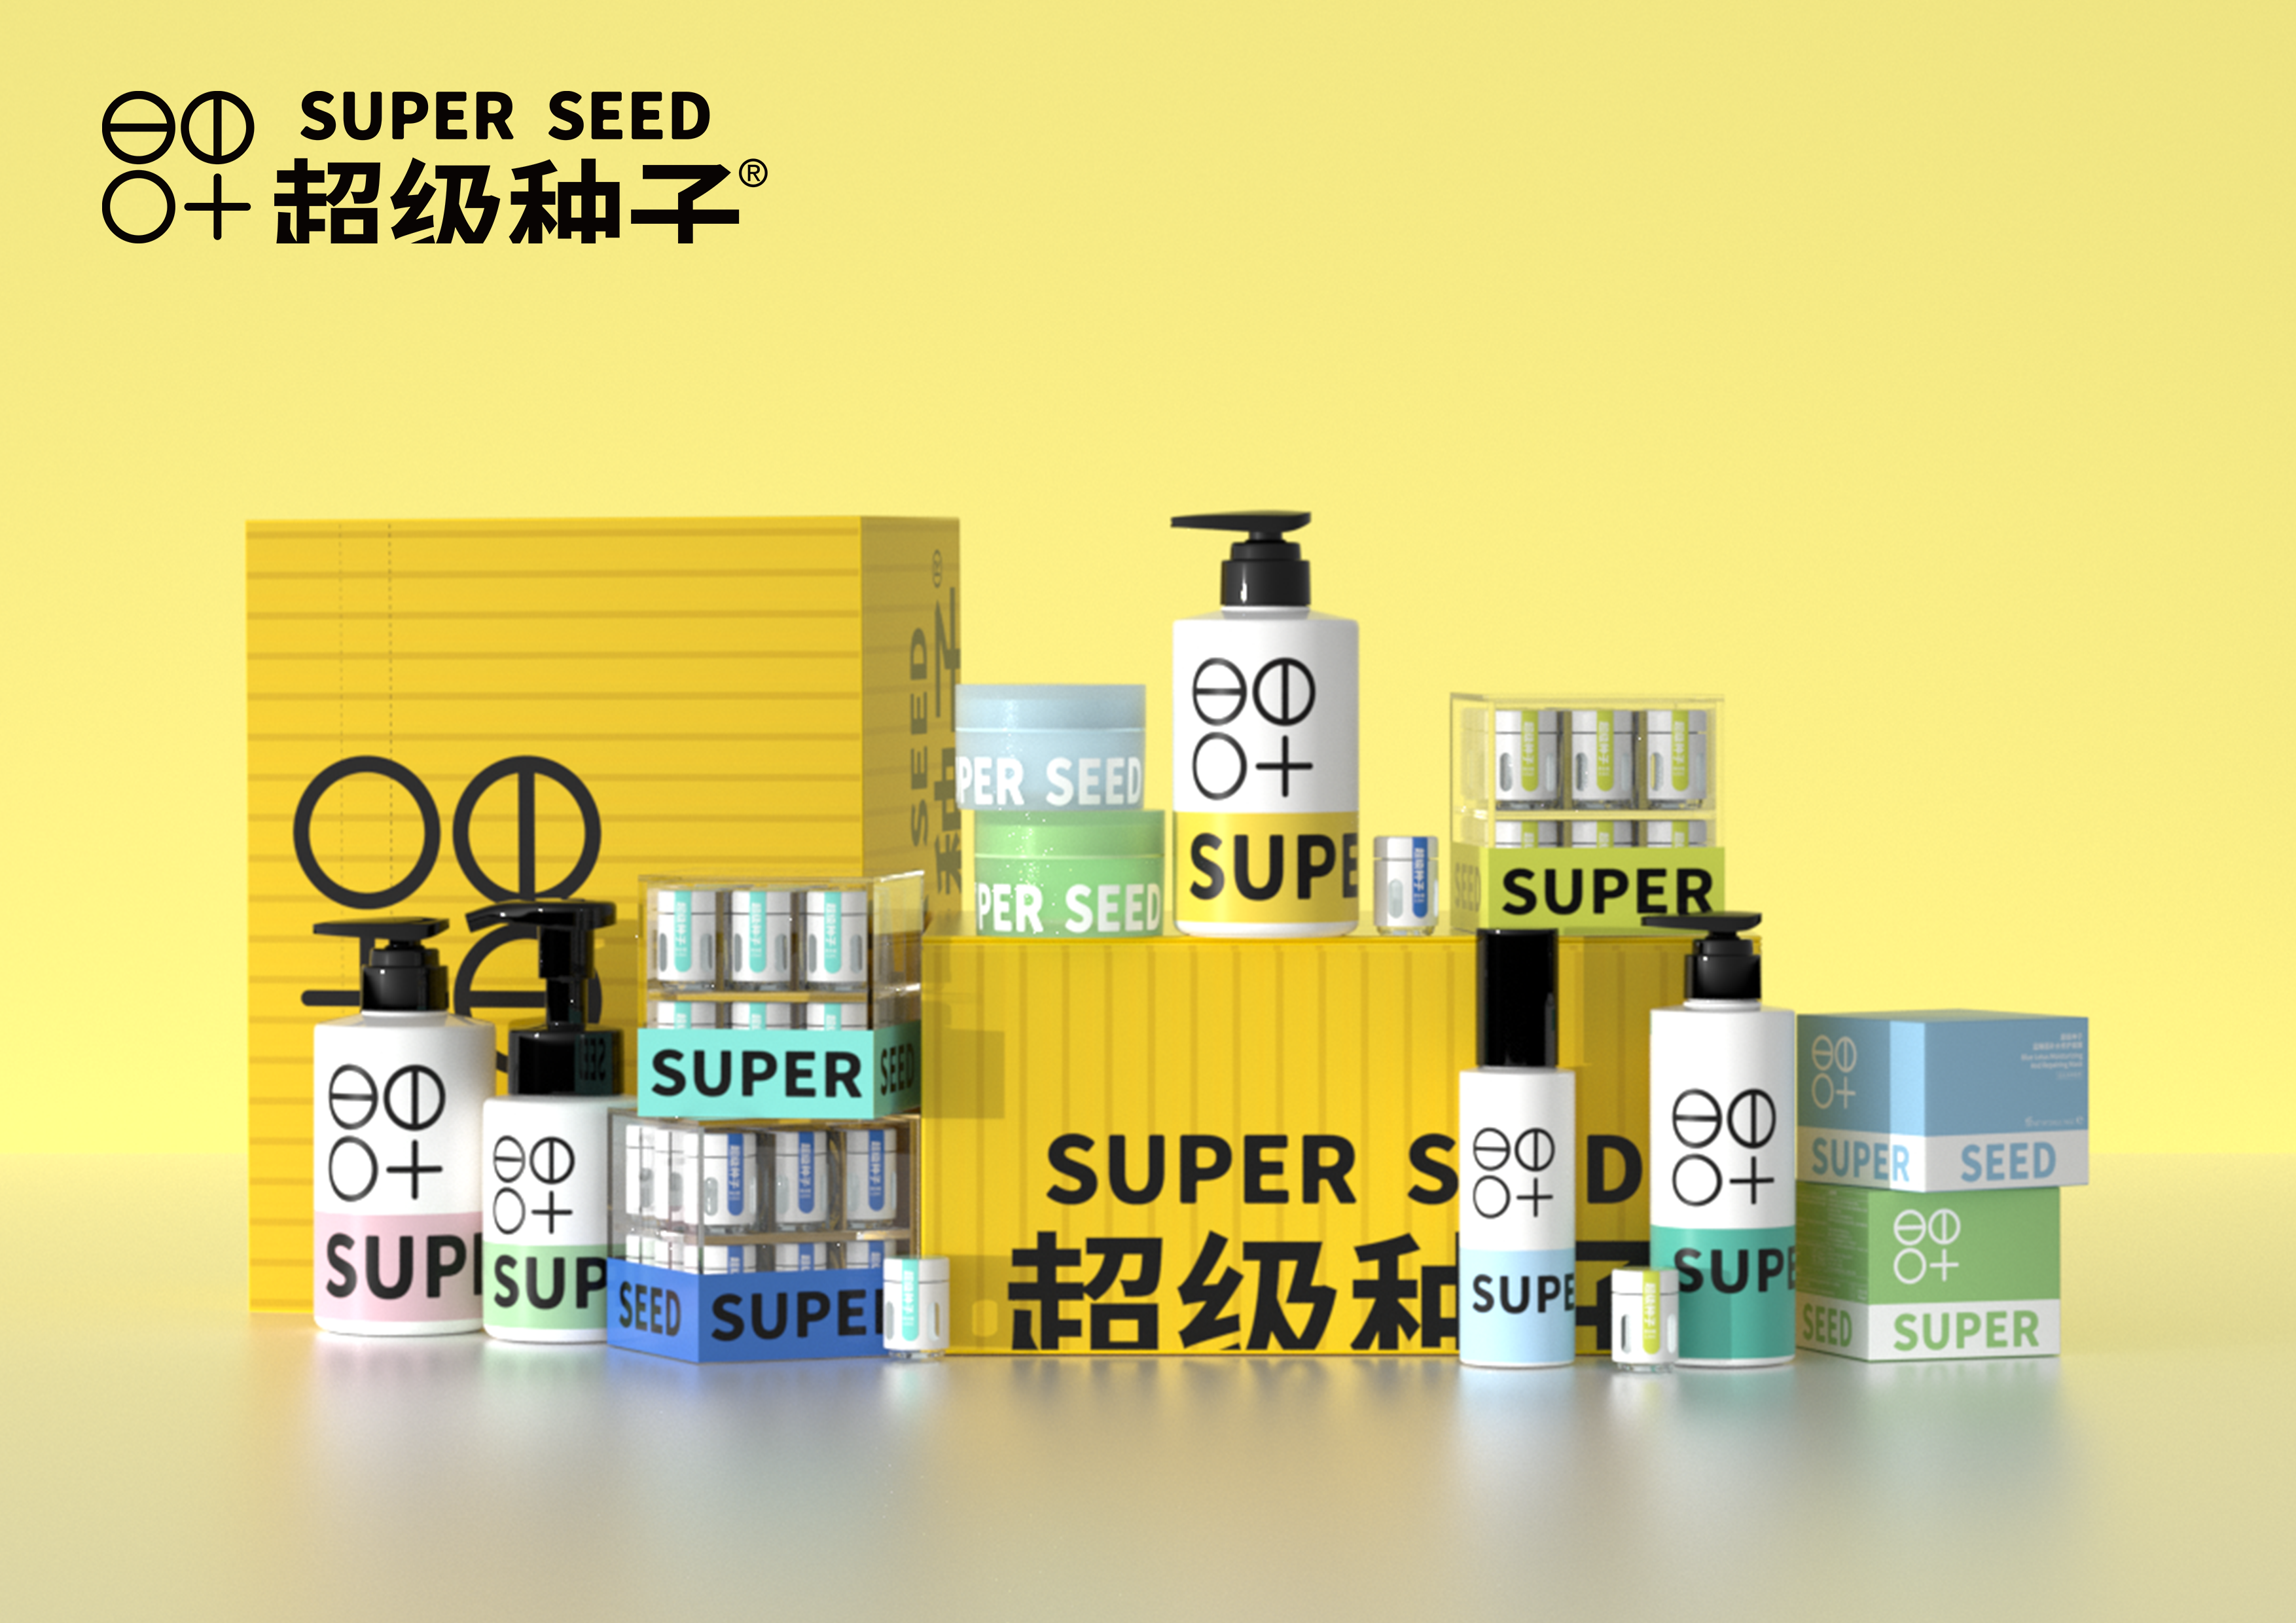 主打有机植物+纯净配方，个护品牌「超级种子」围绕“皮肤森林”强化用户心智